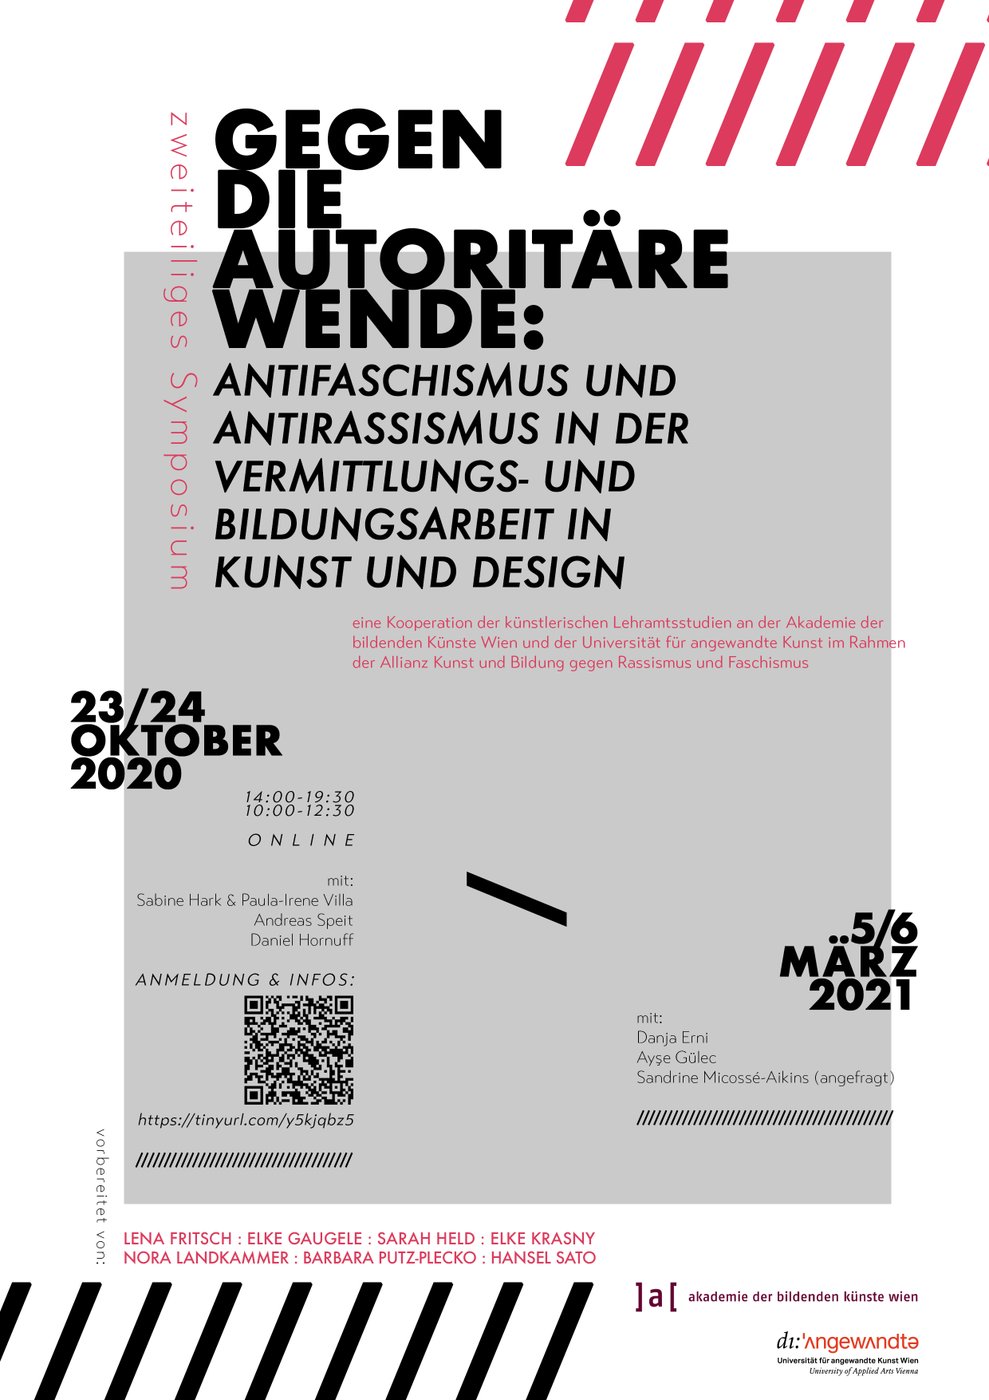 Ein zweiteiliges Symposium, 23/24 Oktober 2020 und 5/6 März 2021


 Anmeldung für Oktober:
 
  https://www.eventbrite.at/e/gegen-die-autoritare-wende-antifaschismus-und-antirassismus-in-der-vermitt-tickets-124222736549
 
 


 Eine Kooperation der künstlerischen Lehramtsstudien an der  Akademie der bildenden Künste Wien und der Universität für angewandte  Kunst im Rahmen der Allianz Kunst und Bildung gegen Rassismus und  Faschismus


 Vorbereitet von Elke Gaugele, Elke Krasny, Barbara Putz-Plecko, Lena Fritsch, Sarah Held, Nora Landkammer, Hansel Sato